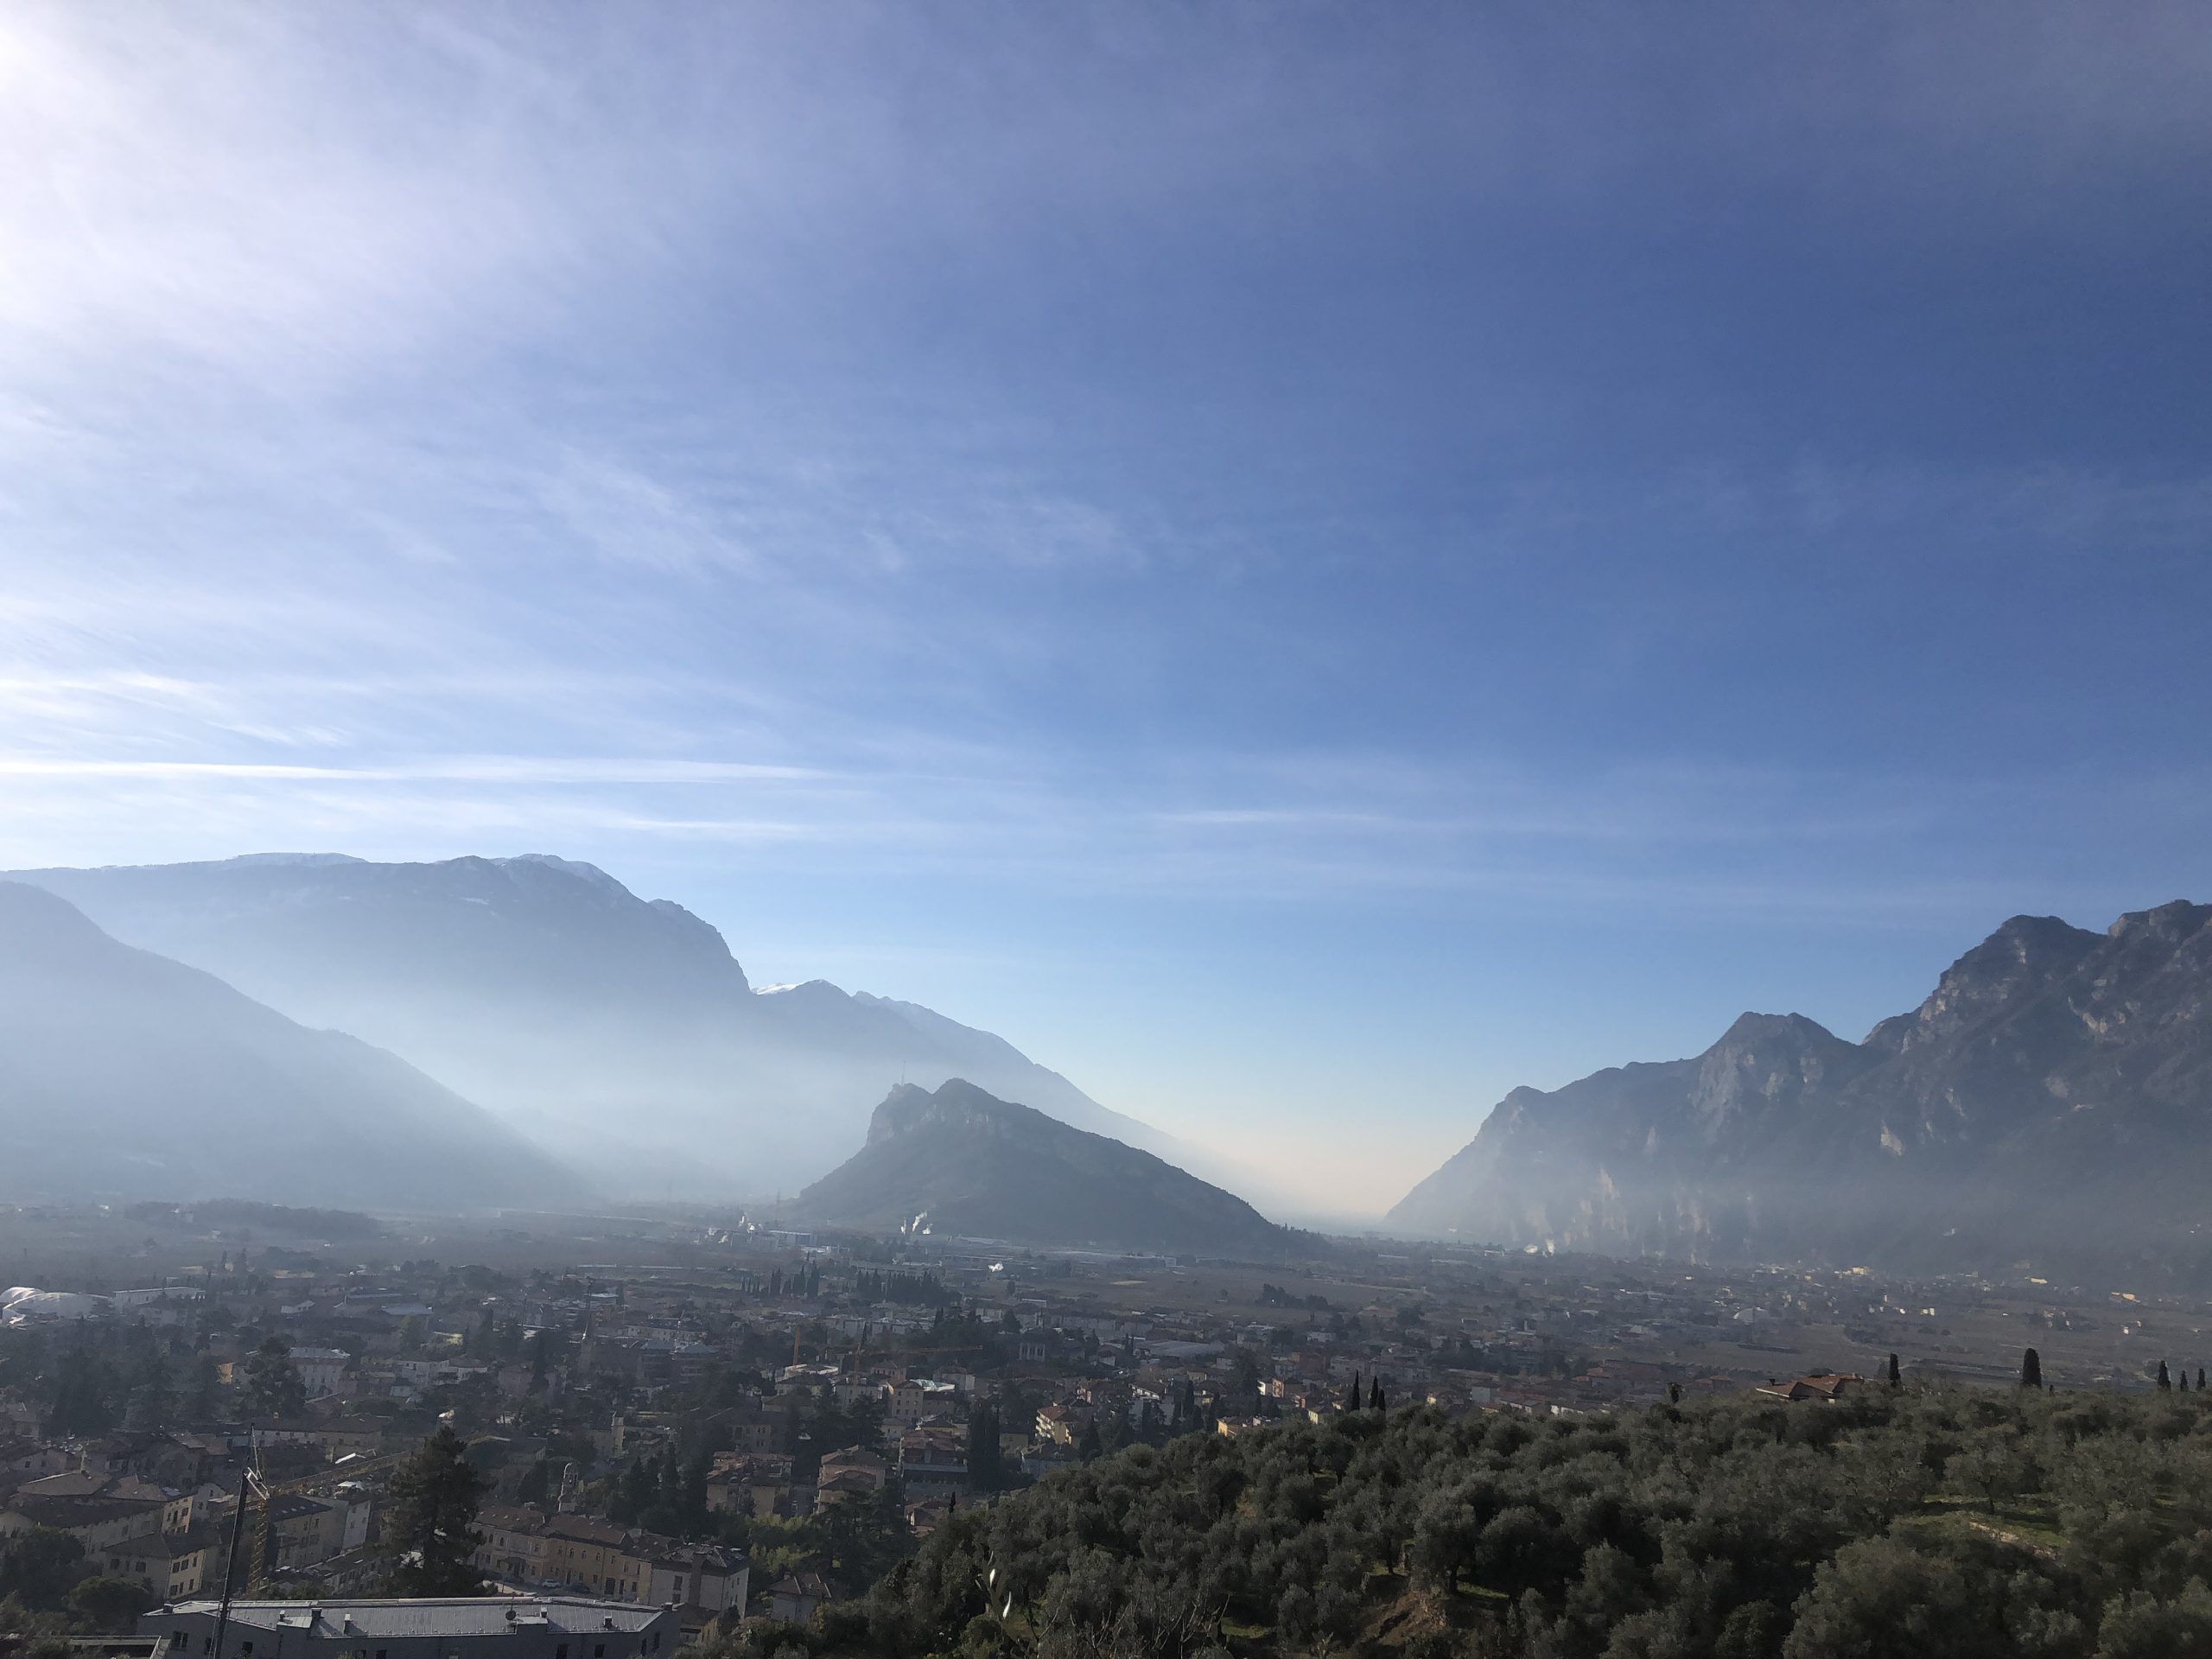 Panoramica sul Garda Trentino, Monte Brione e lago di Garda